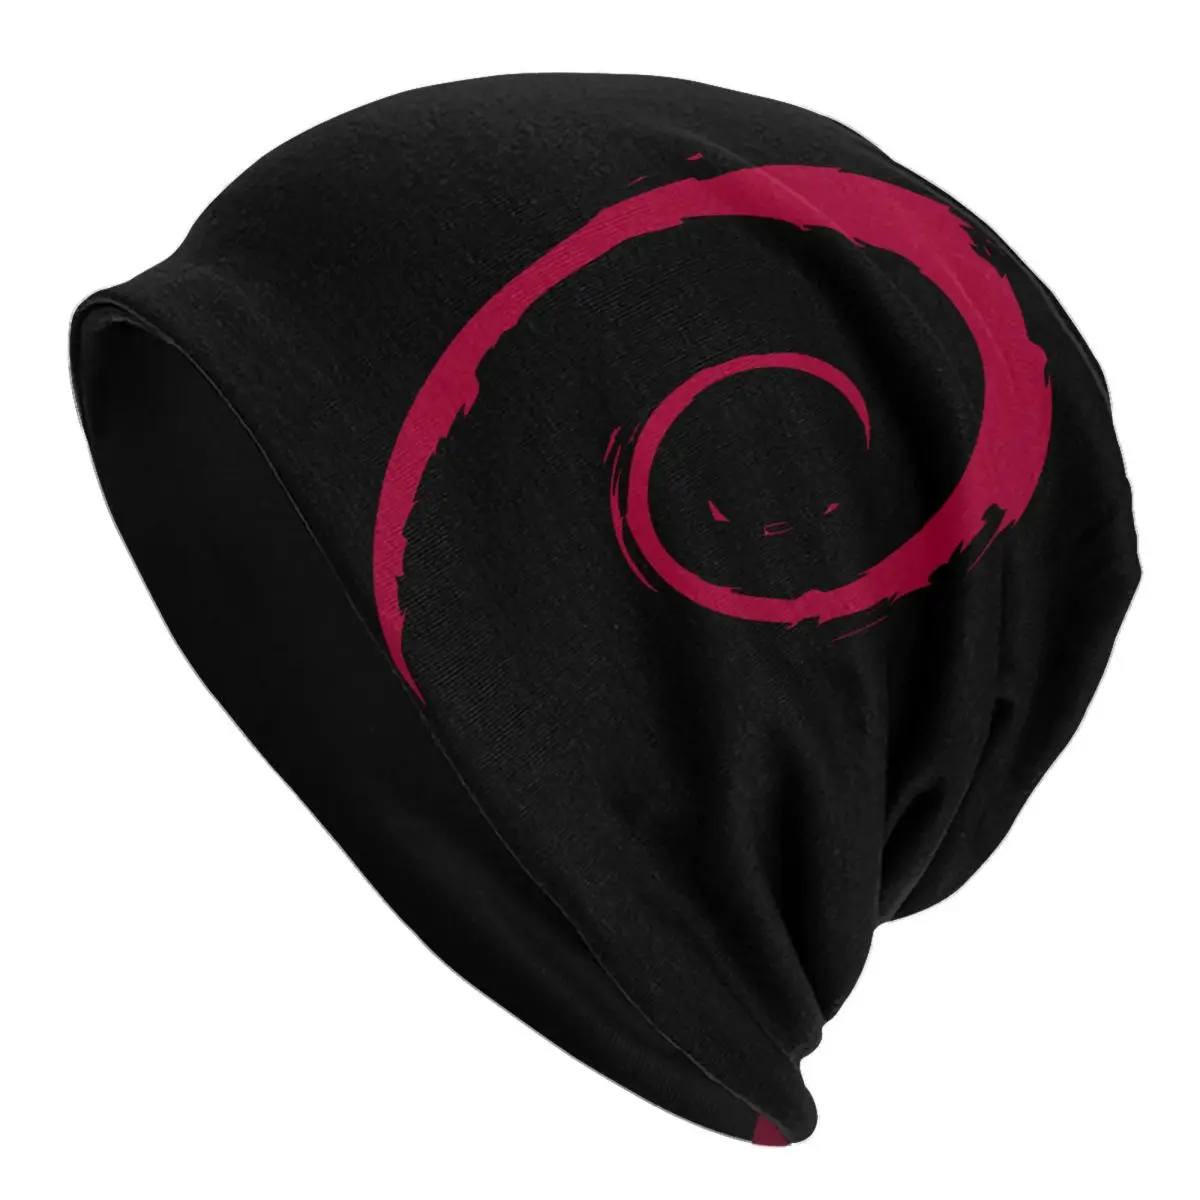 XS Debian Spiral Спортивные Шапочки-бини Linux Code Python Skullies Шапочки Лыжные Кепки Женские шляпы-капоты